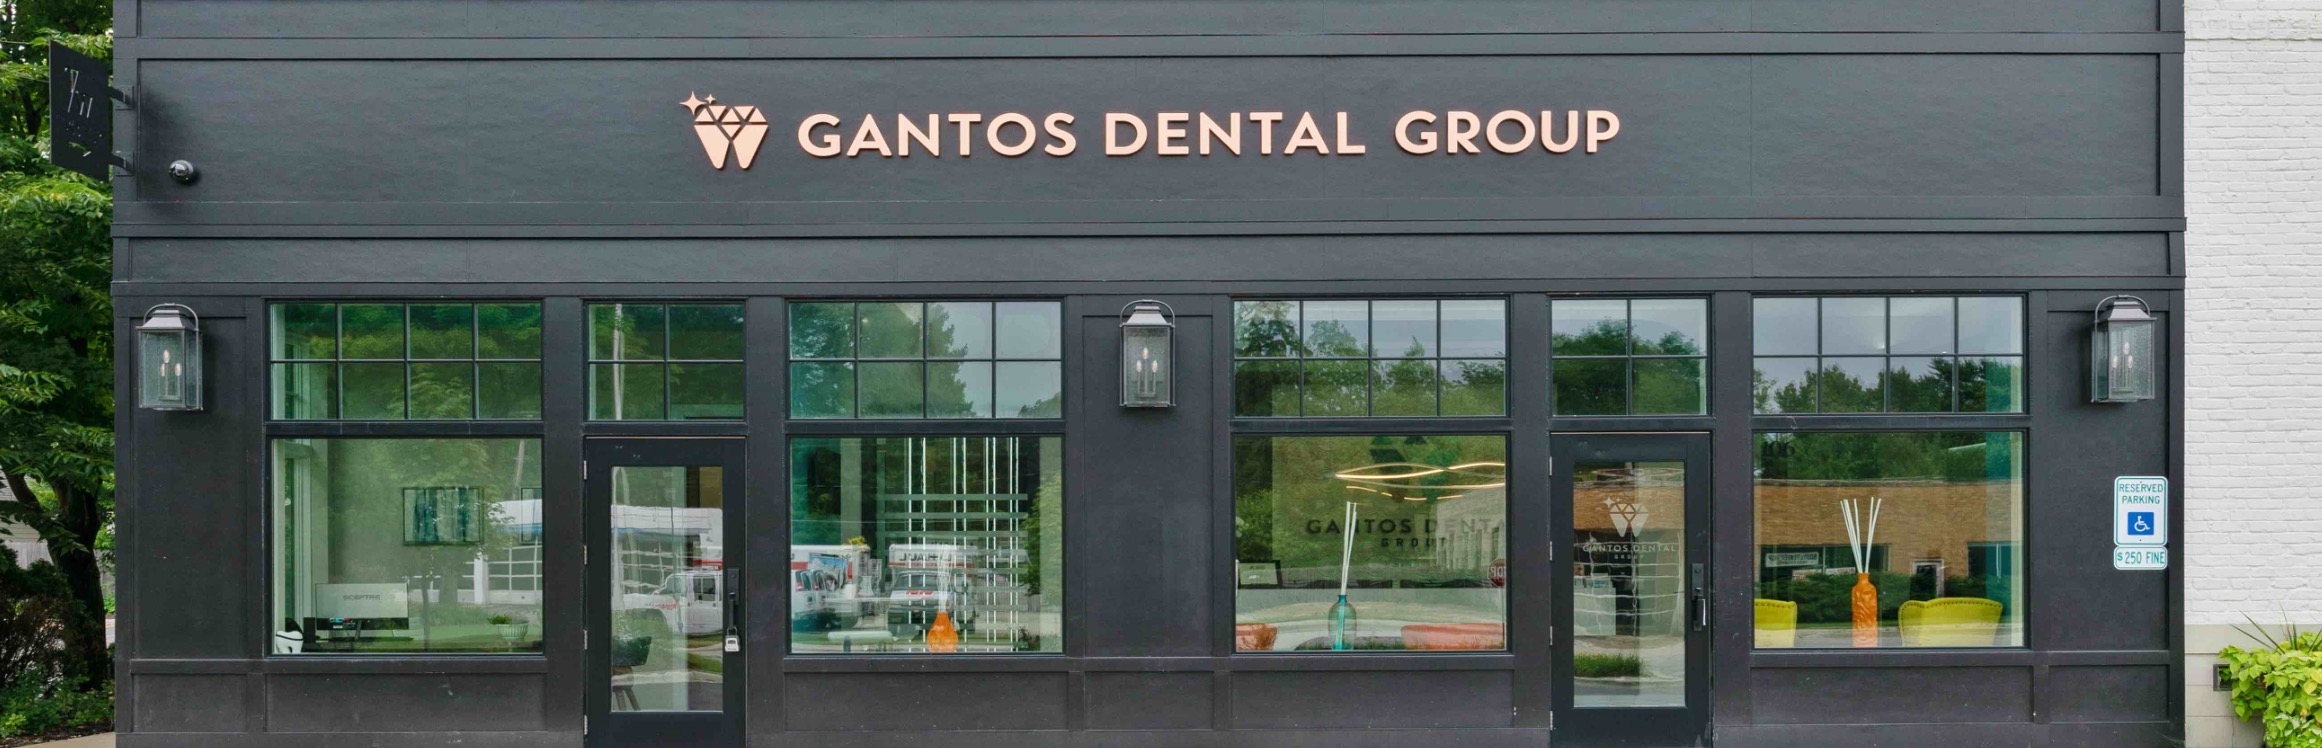 Gantos Dental Group